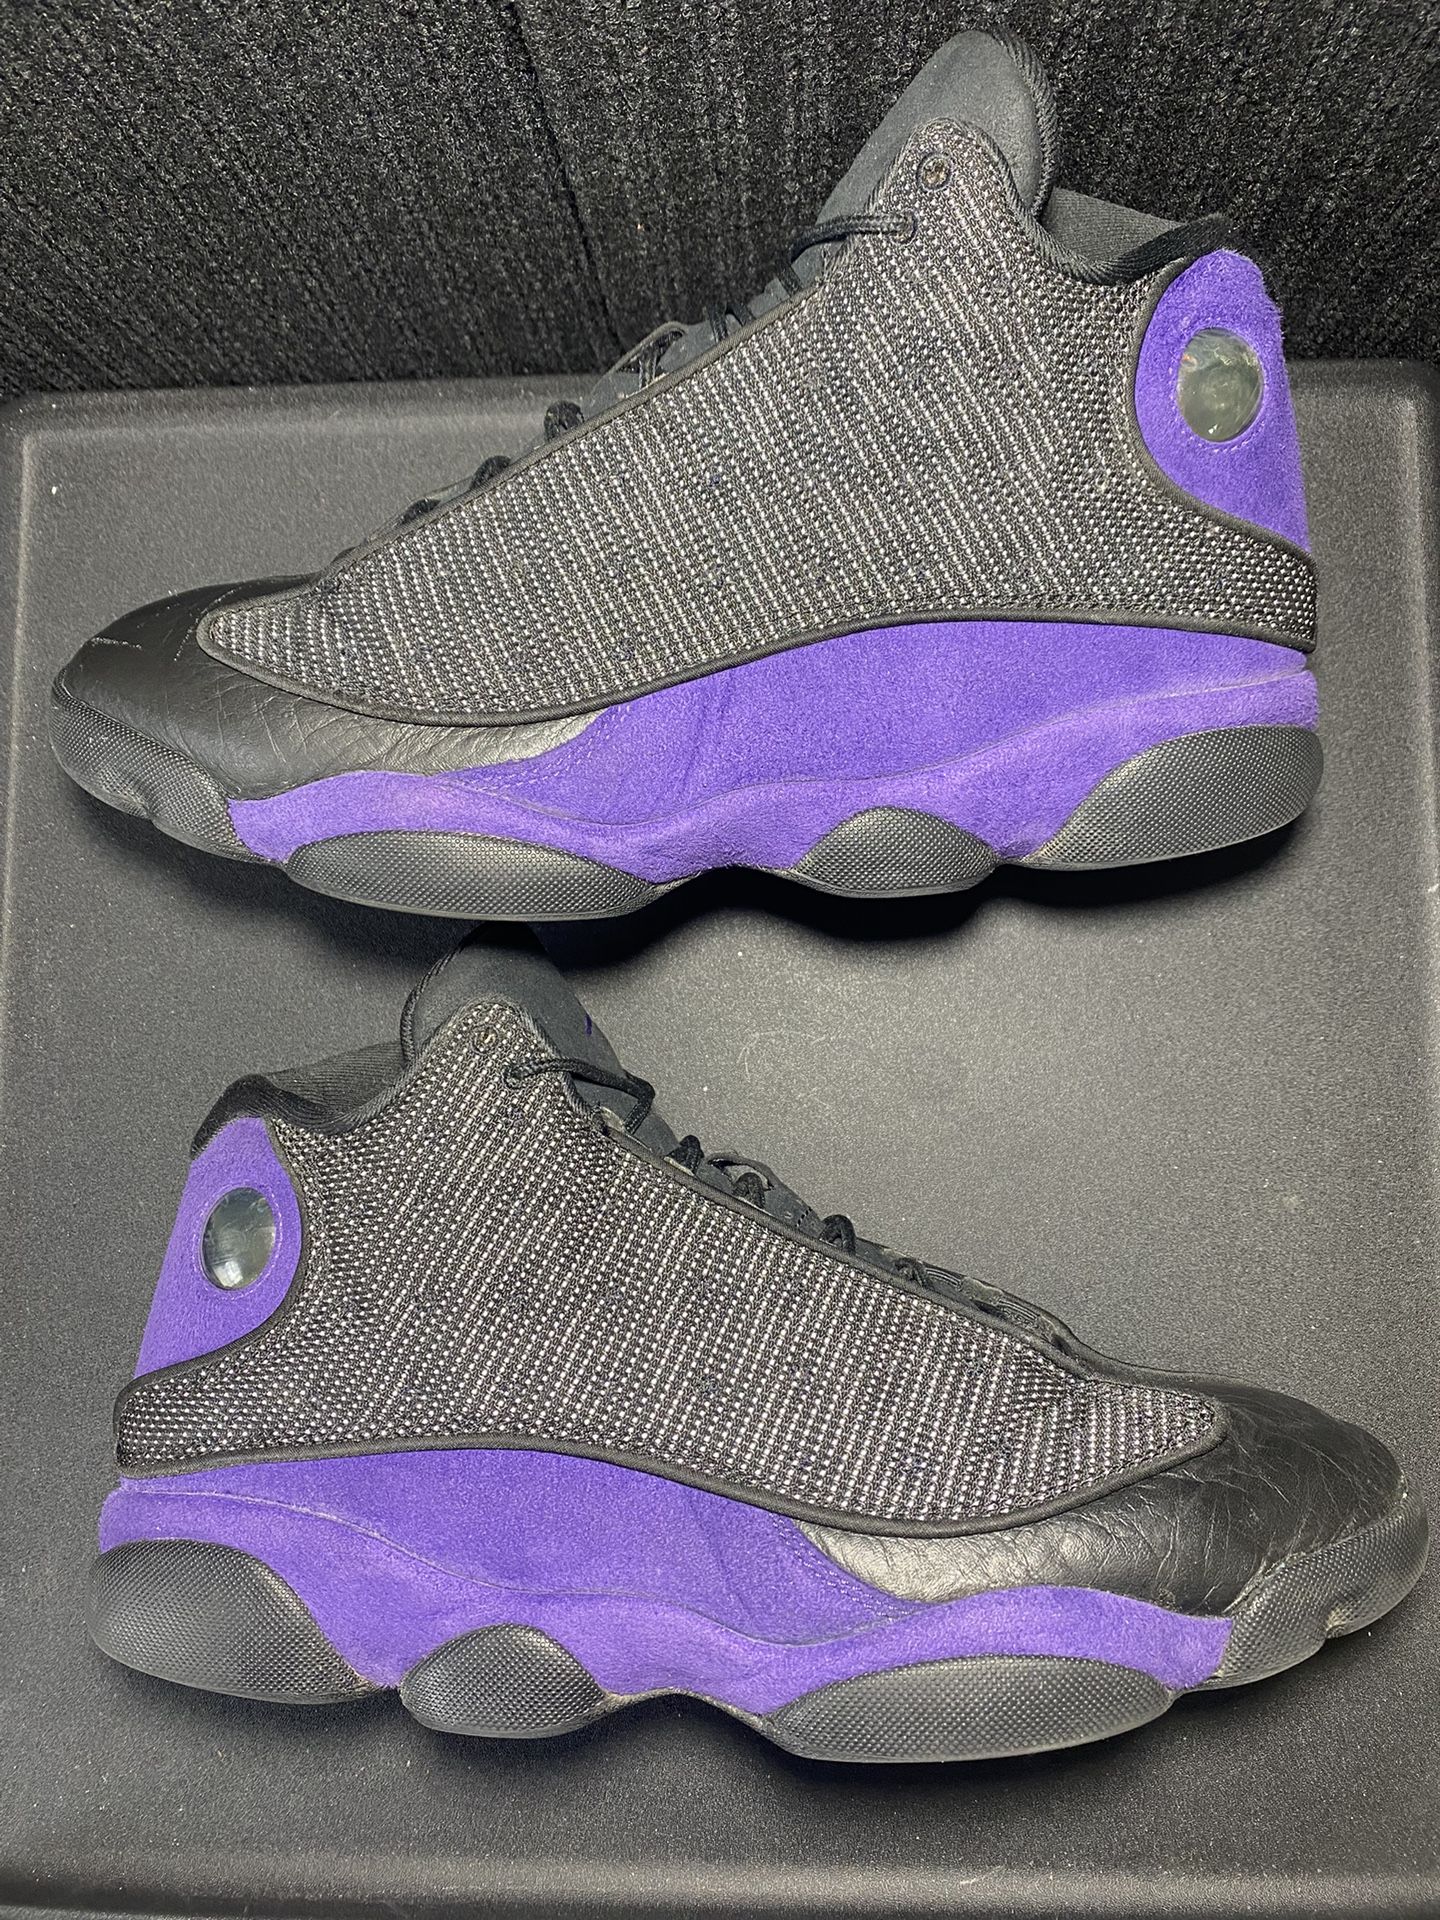 Nike Retro Jordan 13 “Court Purple” Size 10.5